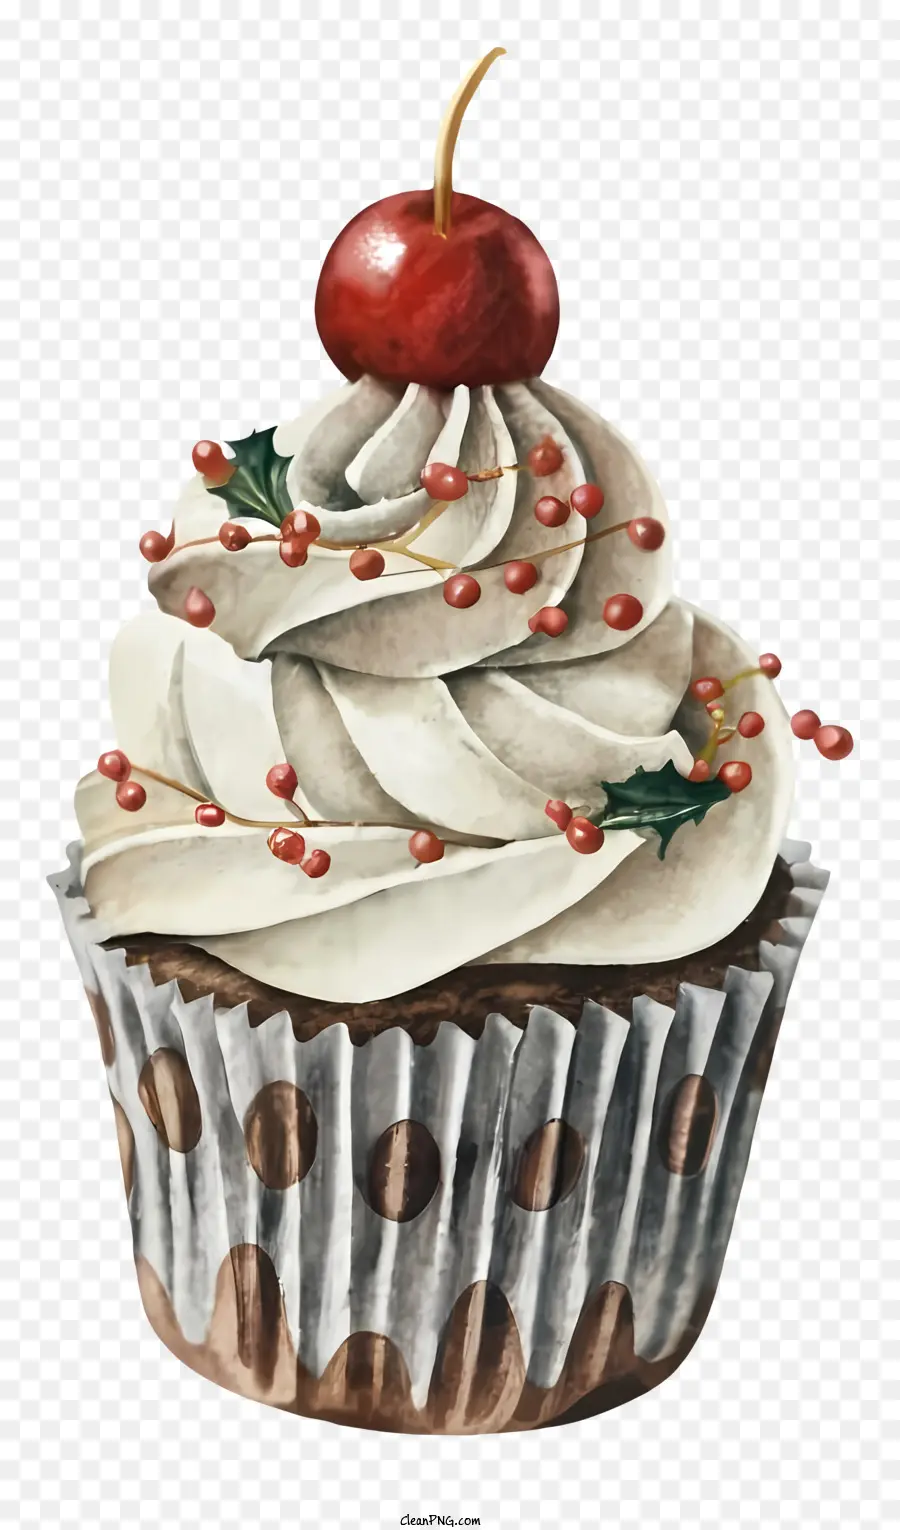 Cupcake Cream Frosting Red Cherry Polka Punkte dunkler Hintergrund - Feuchter Cupcake mit Kirsch- und Polka -Punkten